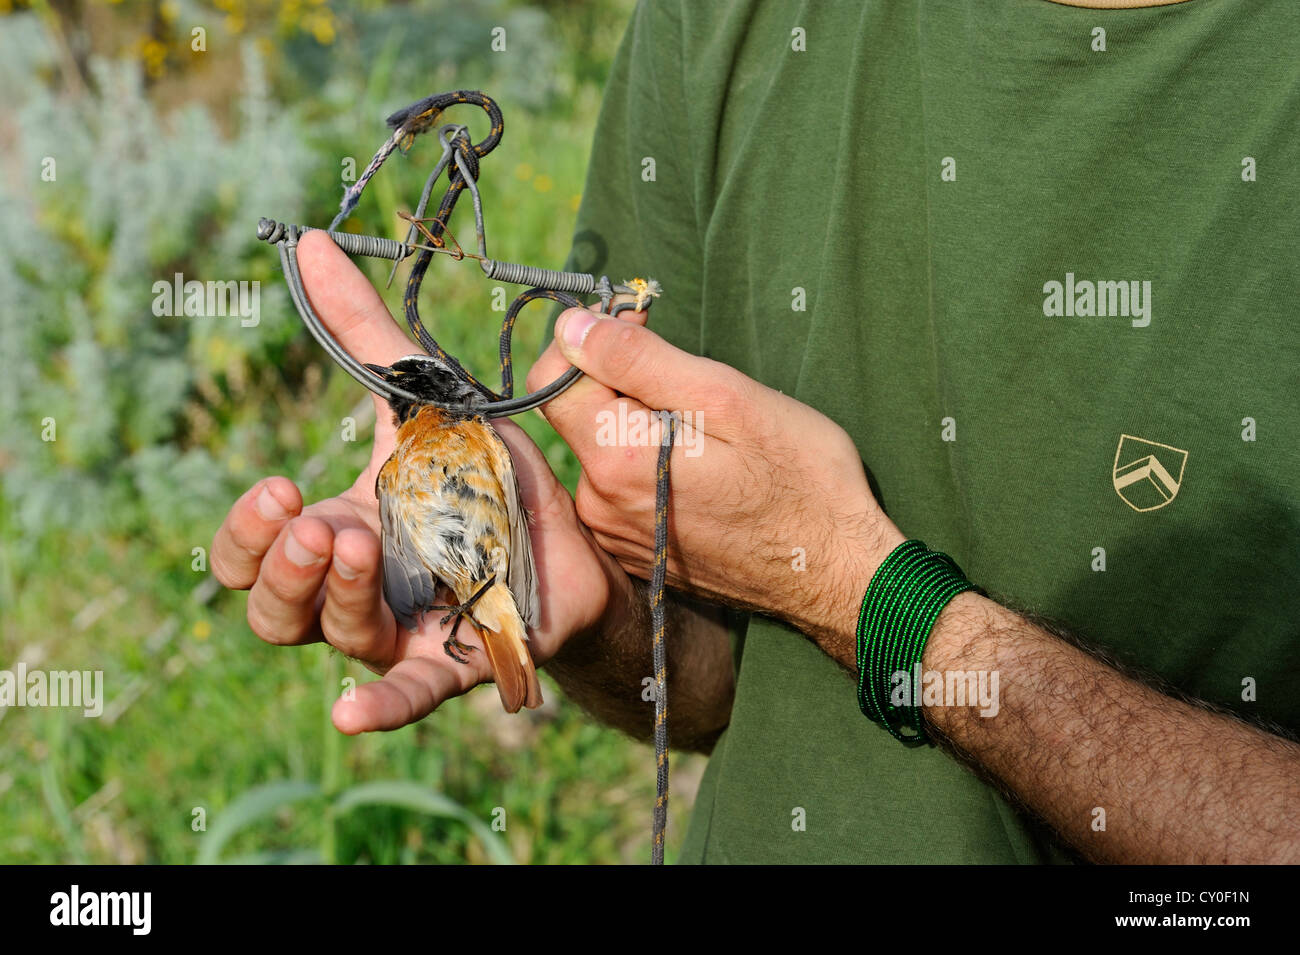 Militant de la campagne contre l'abattage d'oiseaux tenant une Paruline flamboyante mâle migrants pris dans clap trap Ponza Italie Avril Banque D'Images